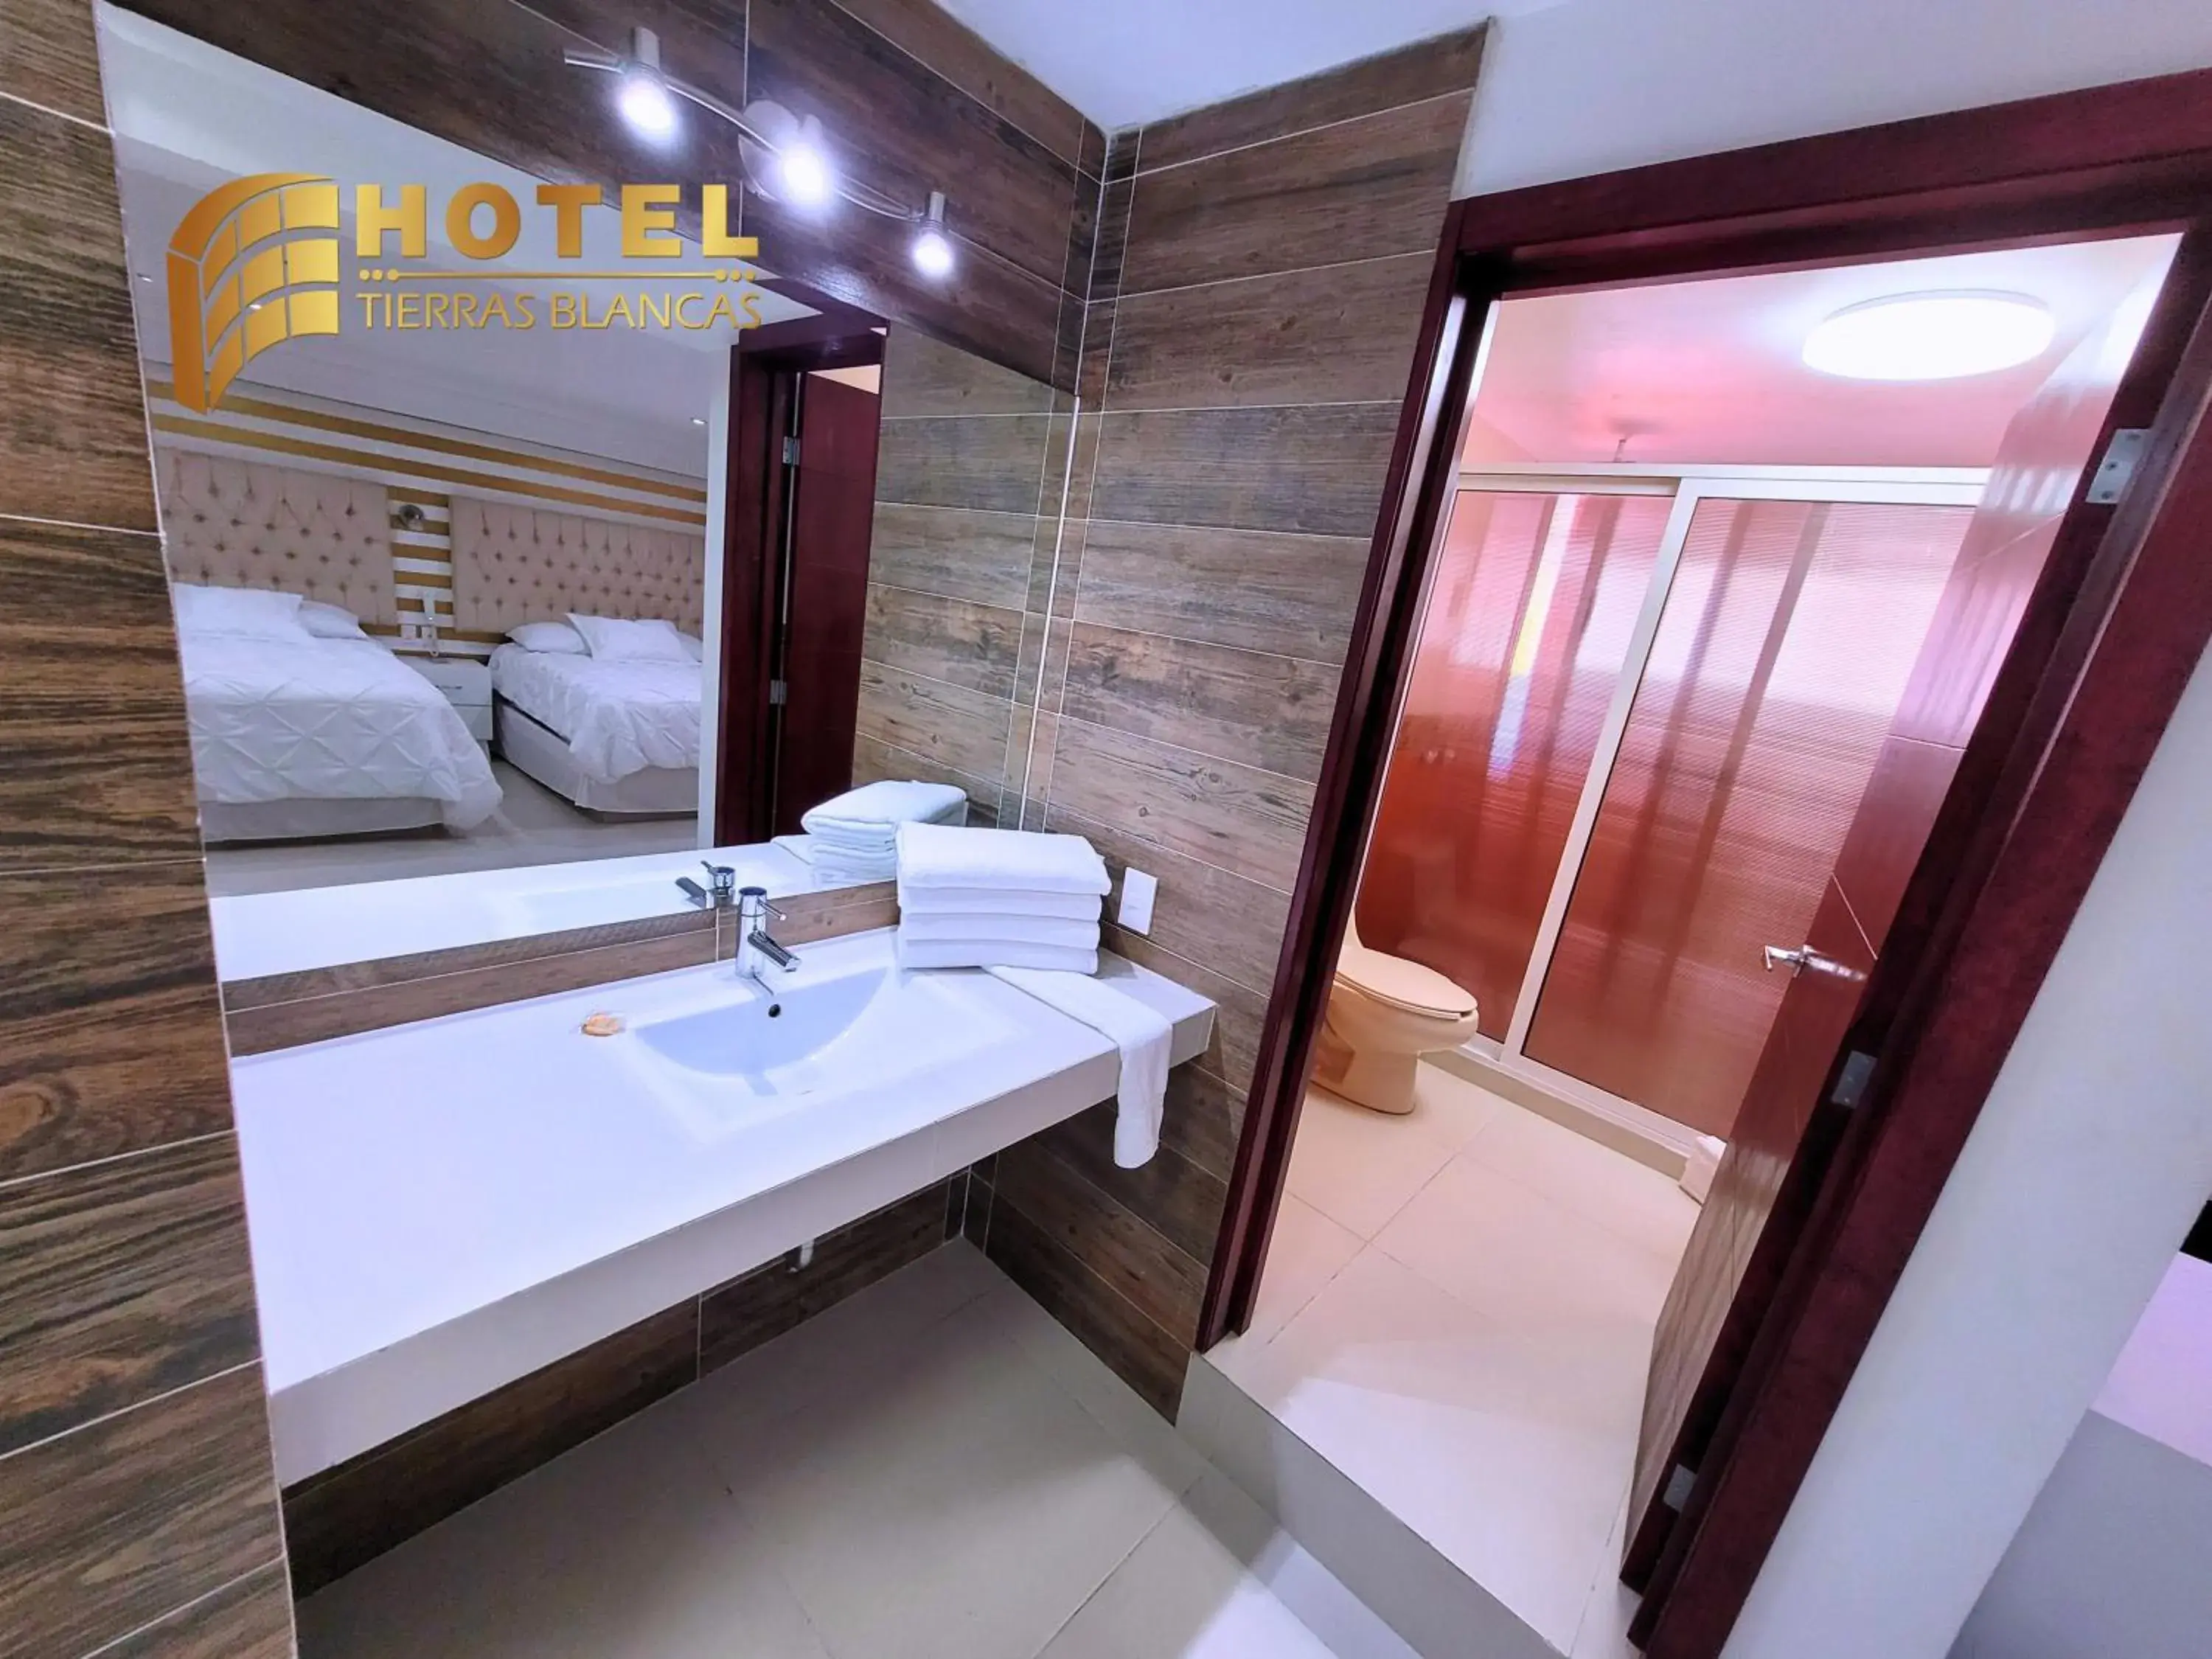 Shower, Bathroom in Hotel Tierras Blancas